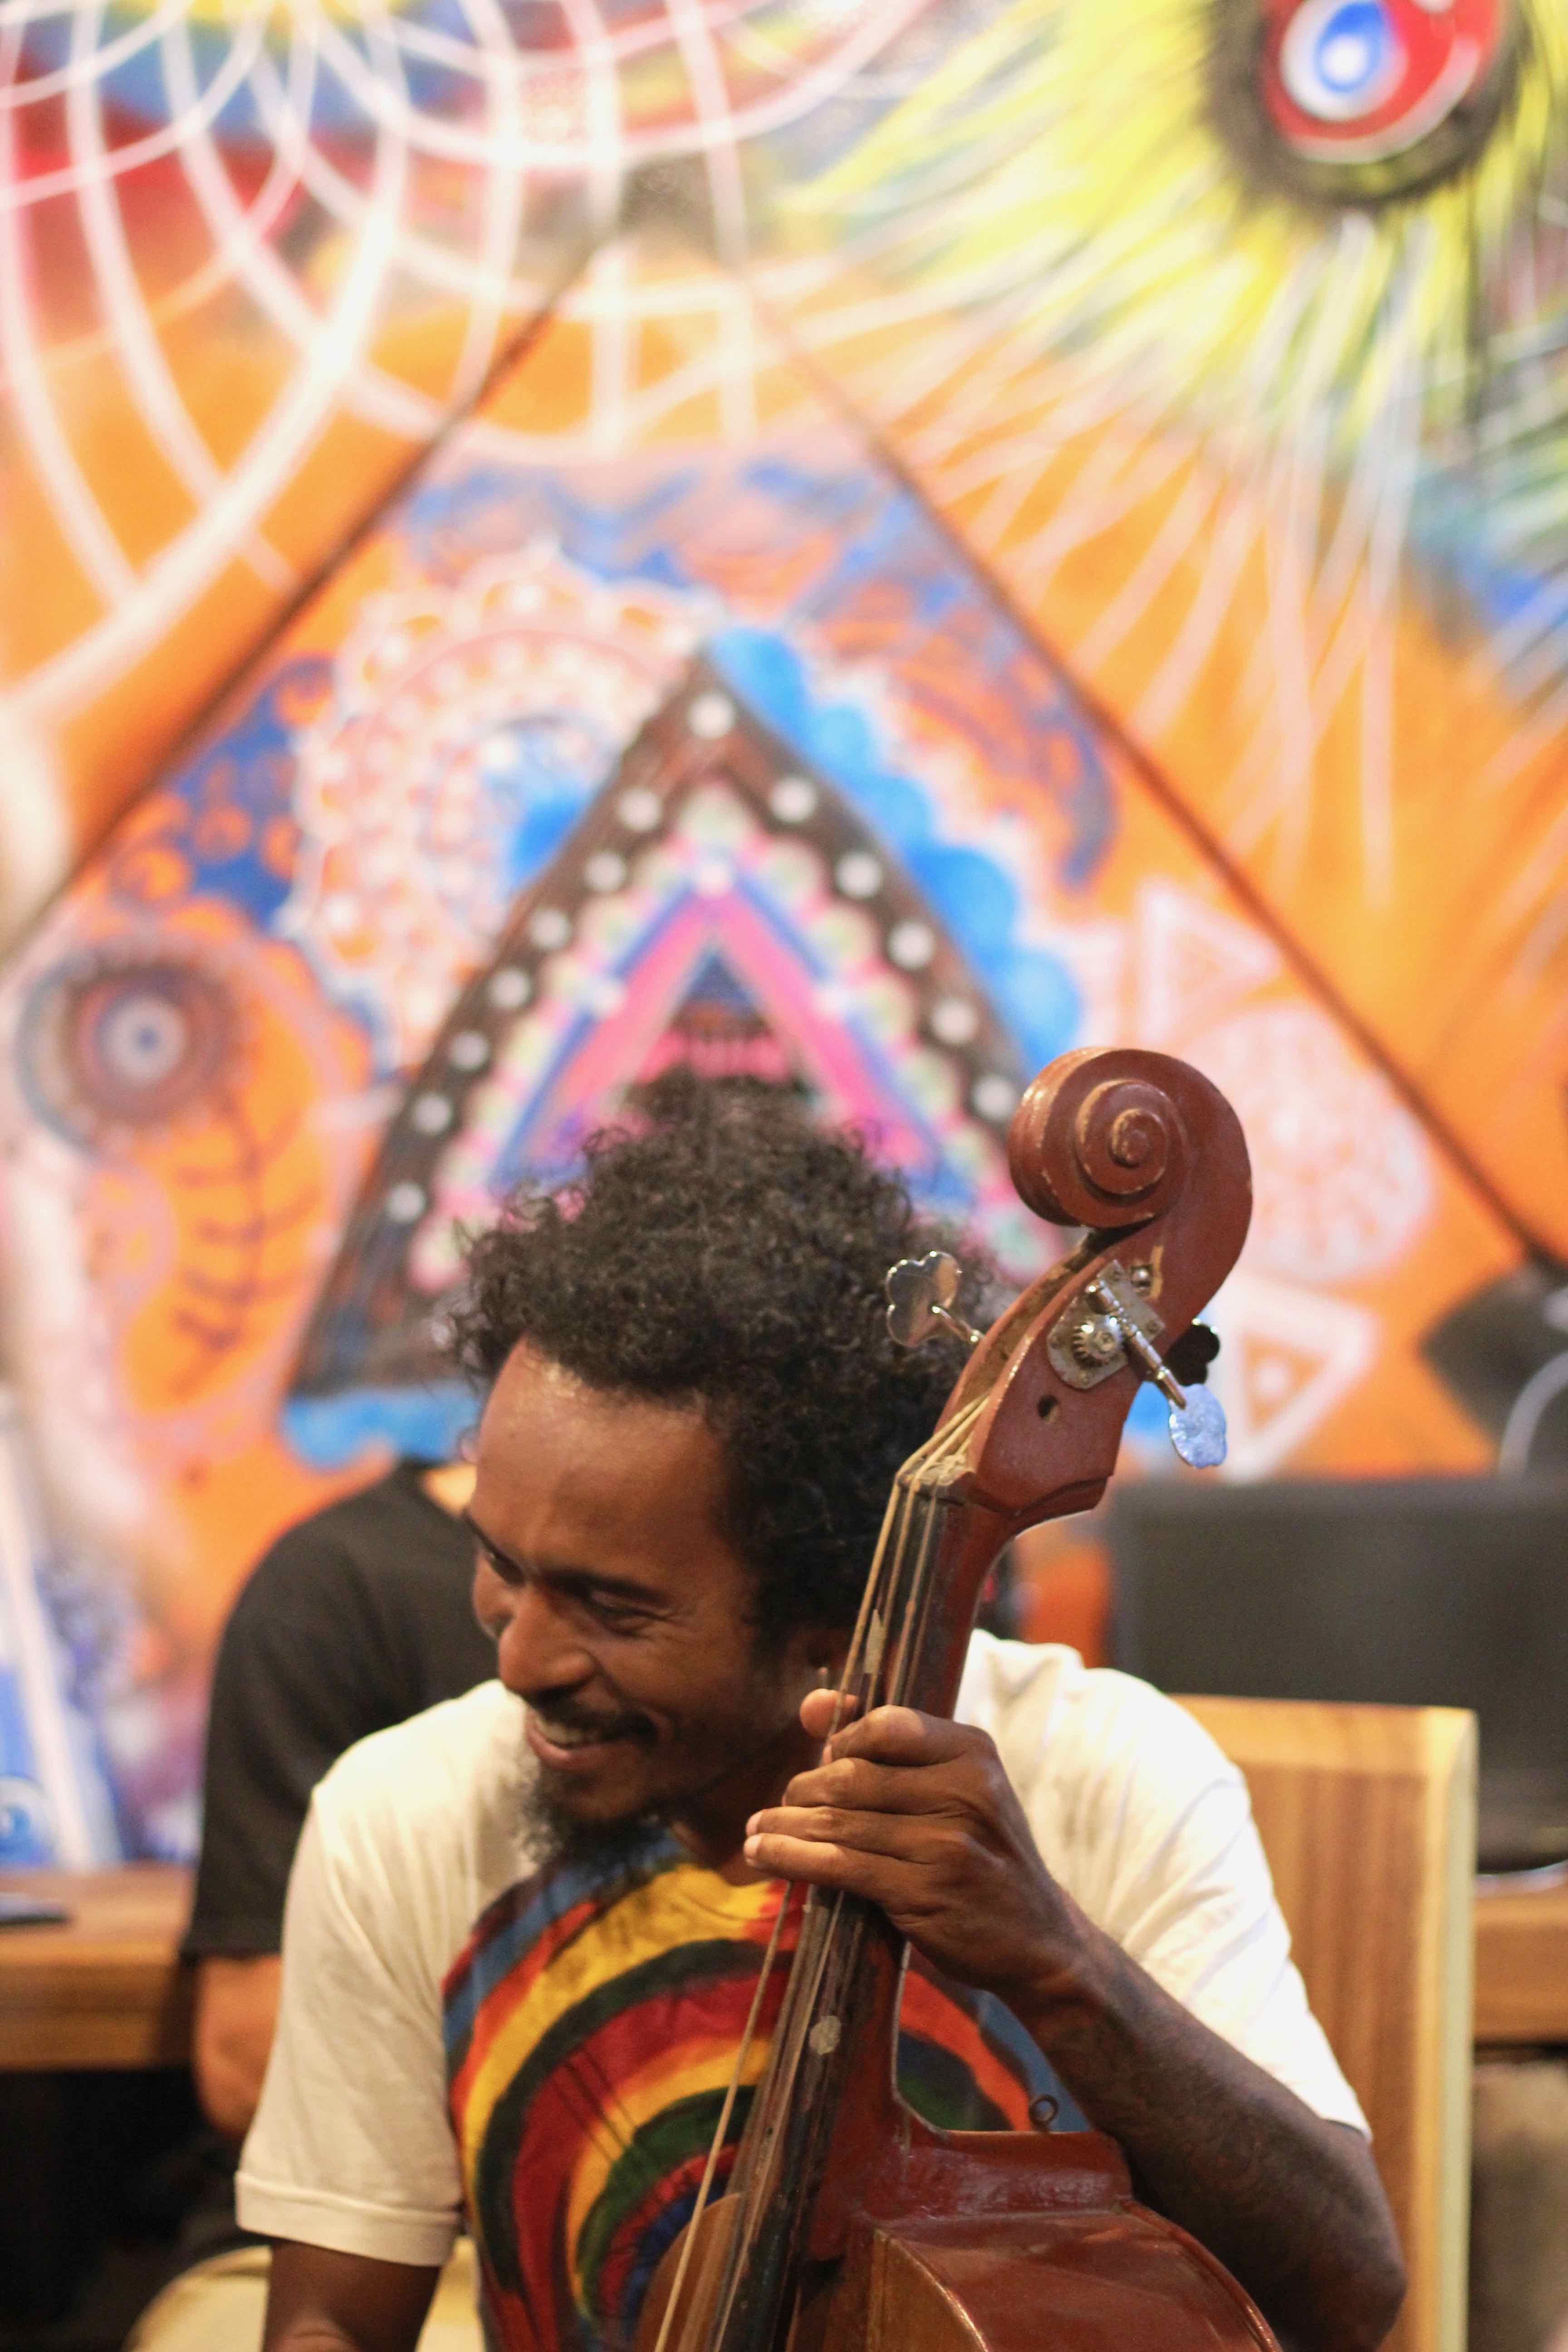 Farley - My friend, a multi-instrumentalist living in Canggu, Bali